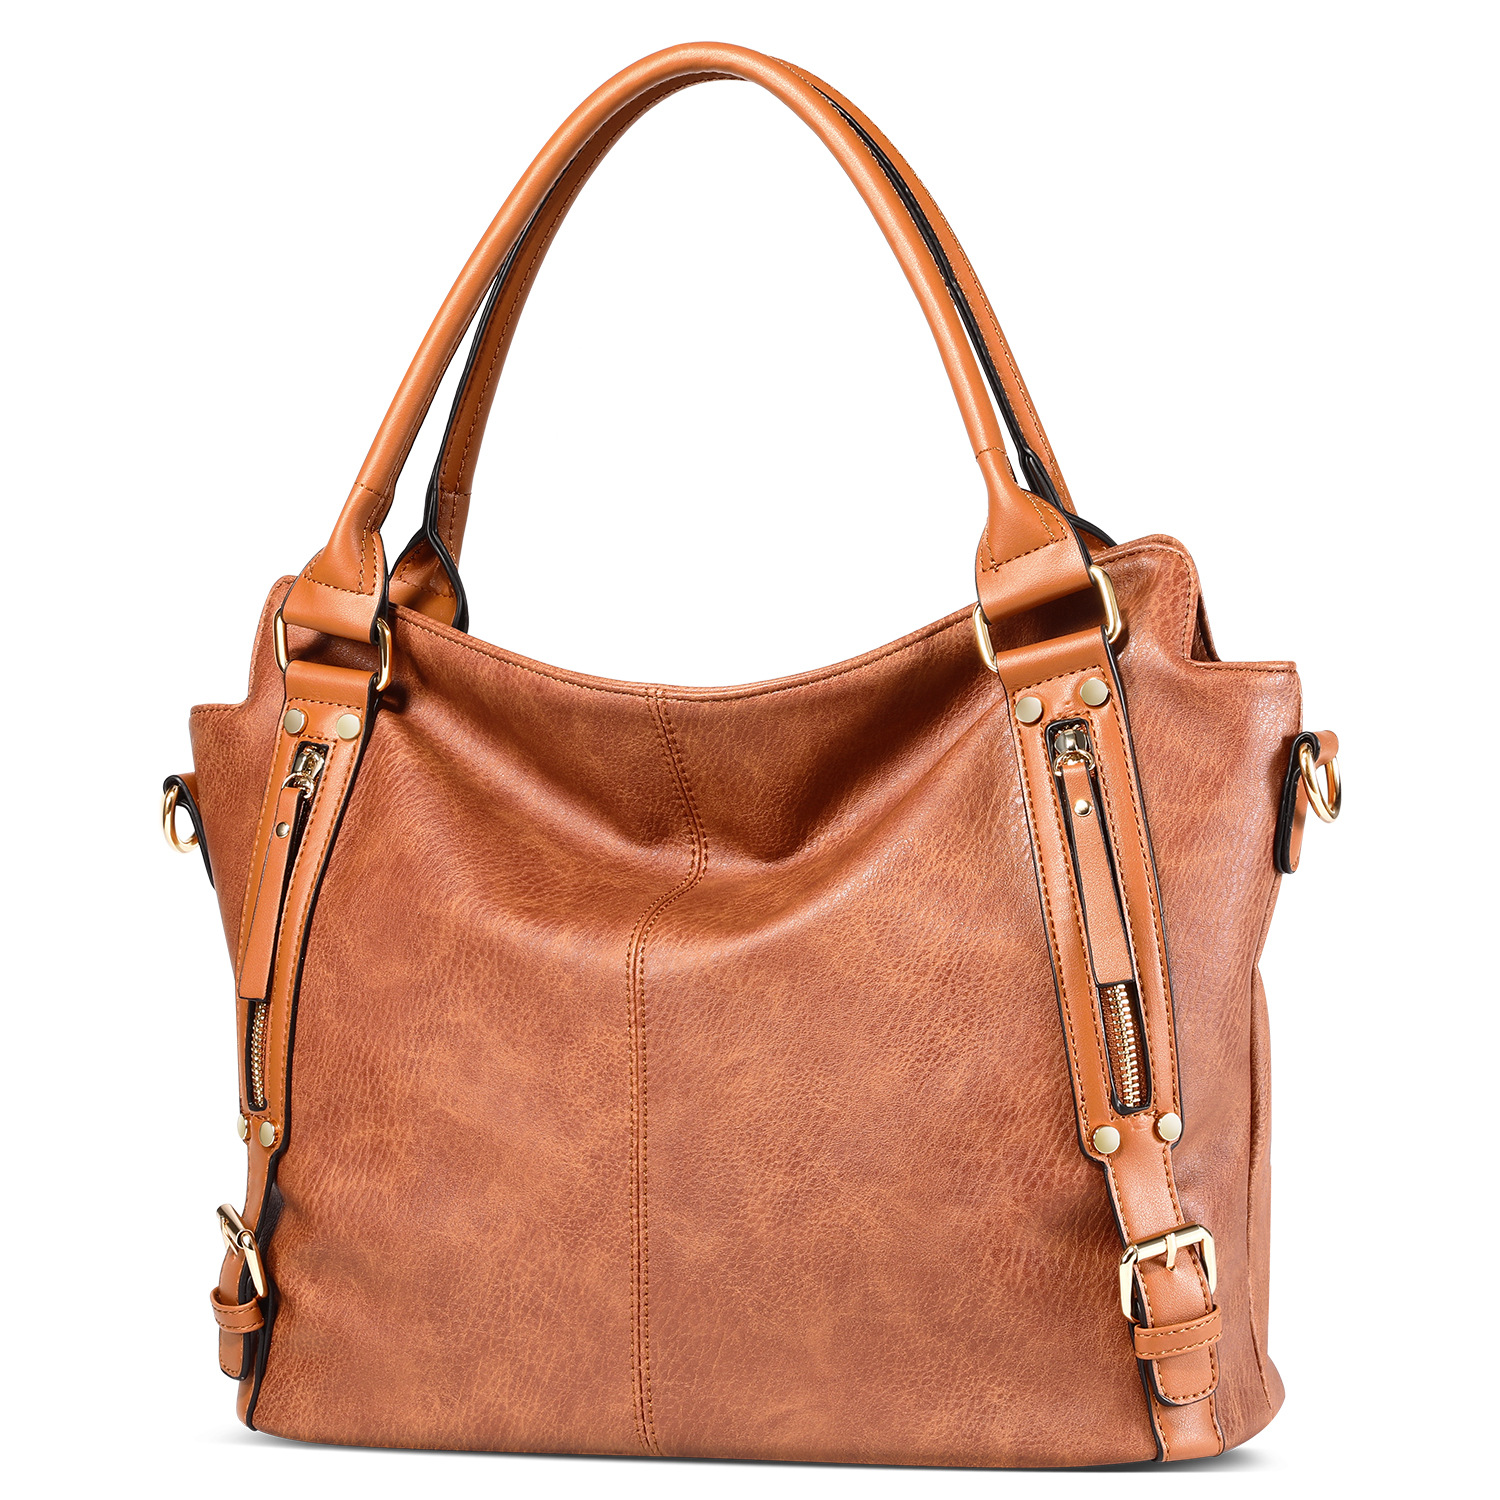 lady handbag hand bag handbags ladies handbag women bags fashion handbag bag clut bag tote bag fashion bags